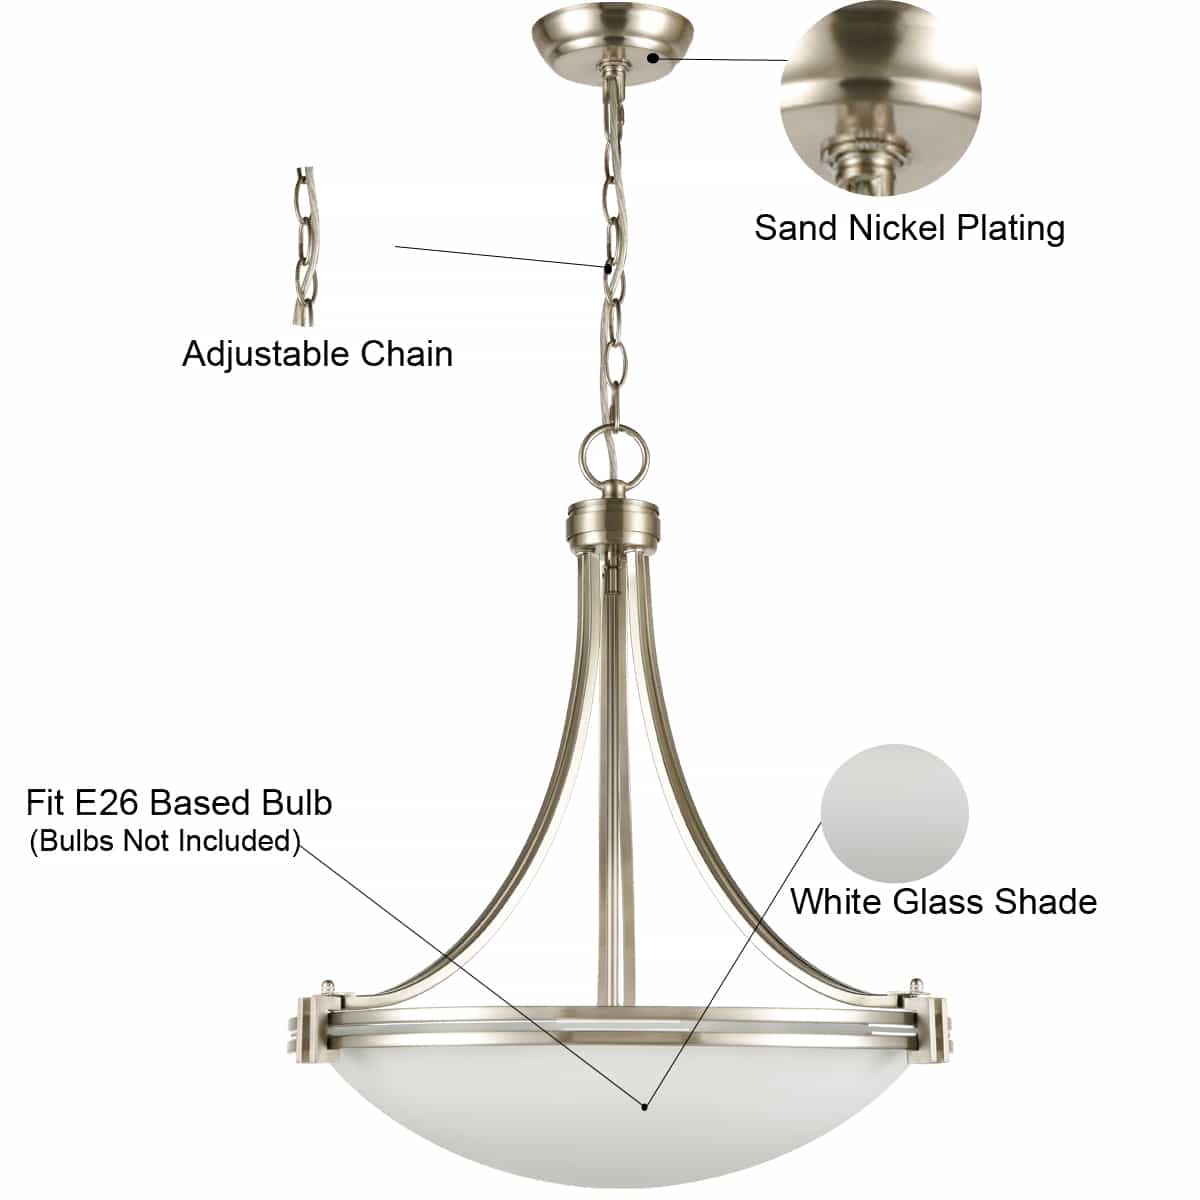 Sand Nickel Plating Pendant Light 3-Light Elegant White Glass